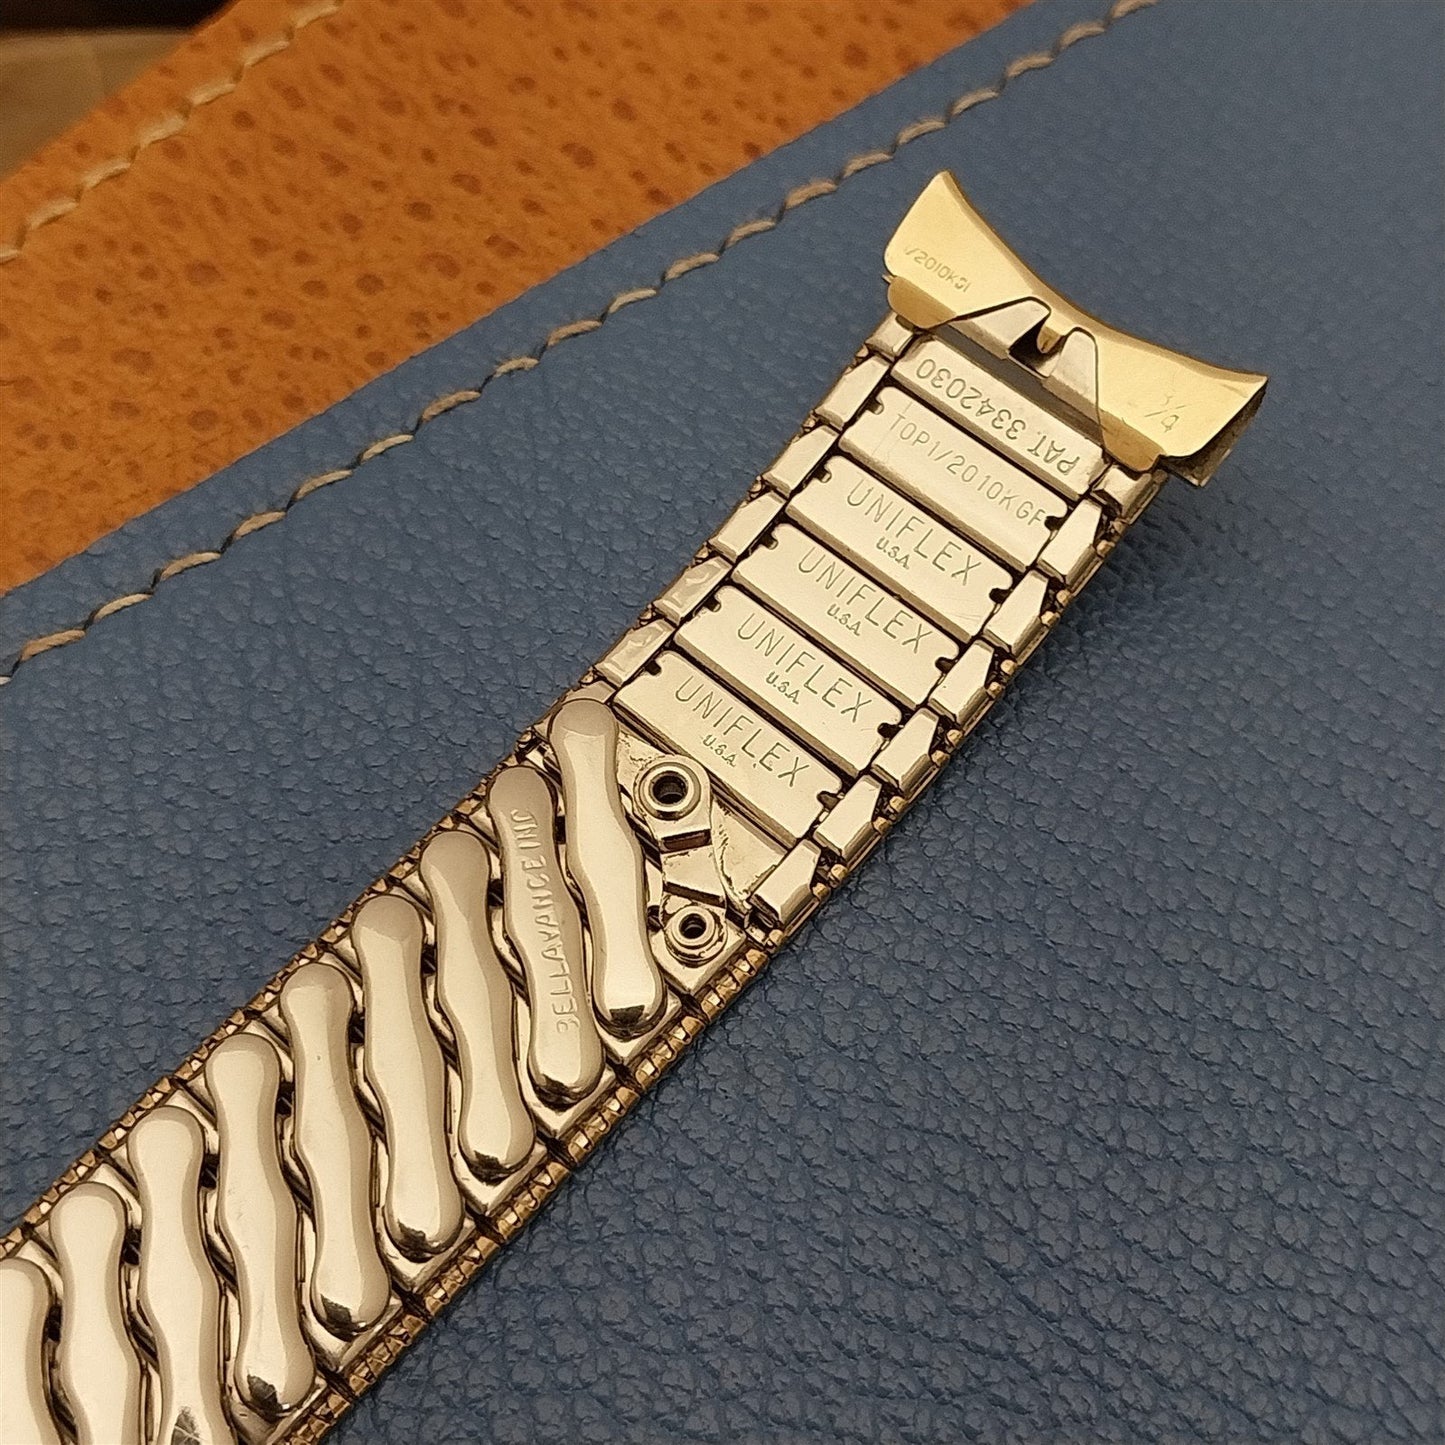 19mm 18mm 16mm 10k Gold-Filled 1960s Vintage Watch Band Uniflex Slim Expansion